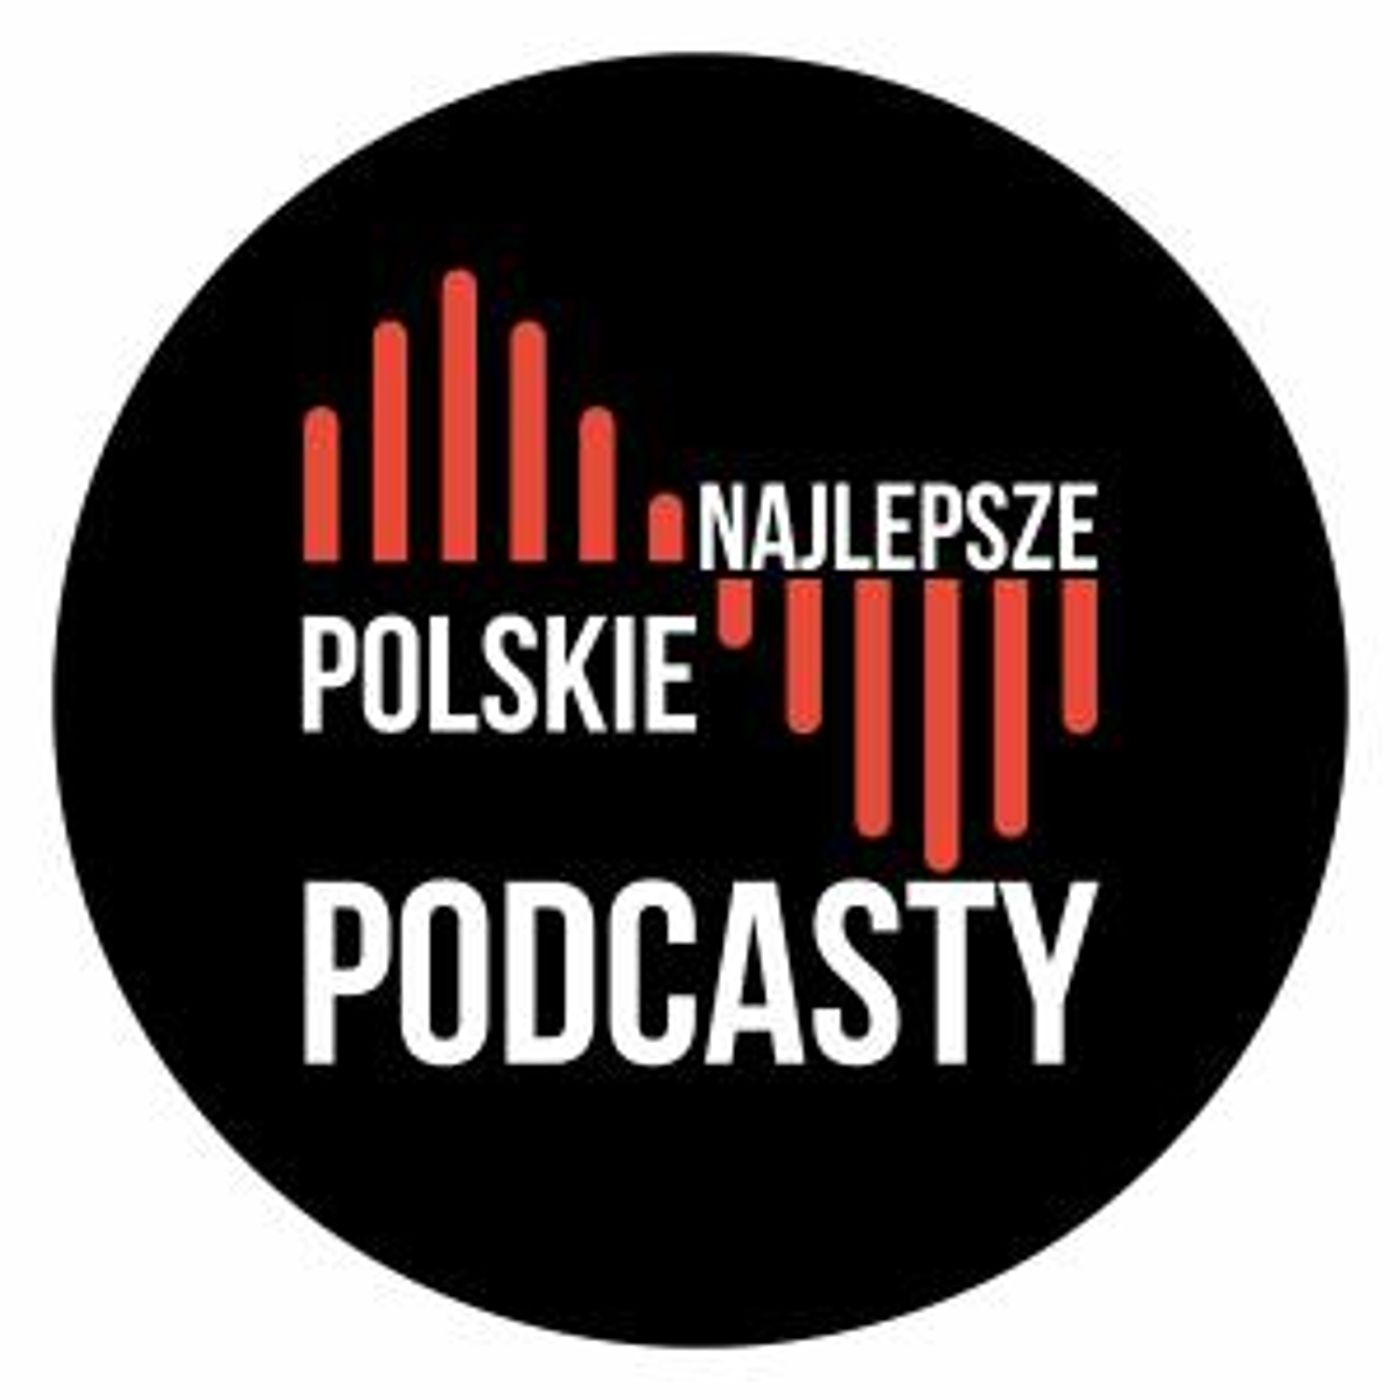 Polscy podcasterzy - Agnieszka Jurkowska